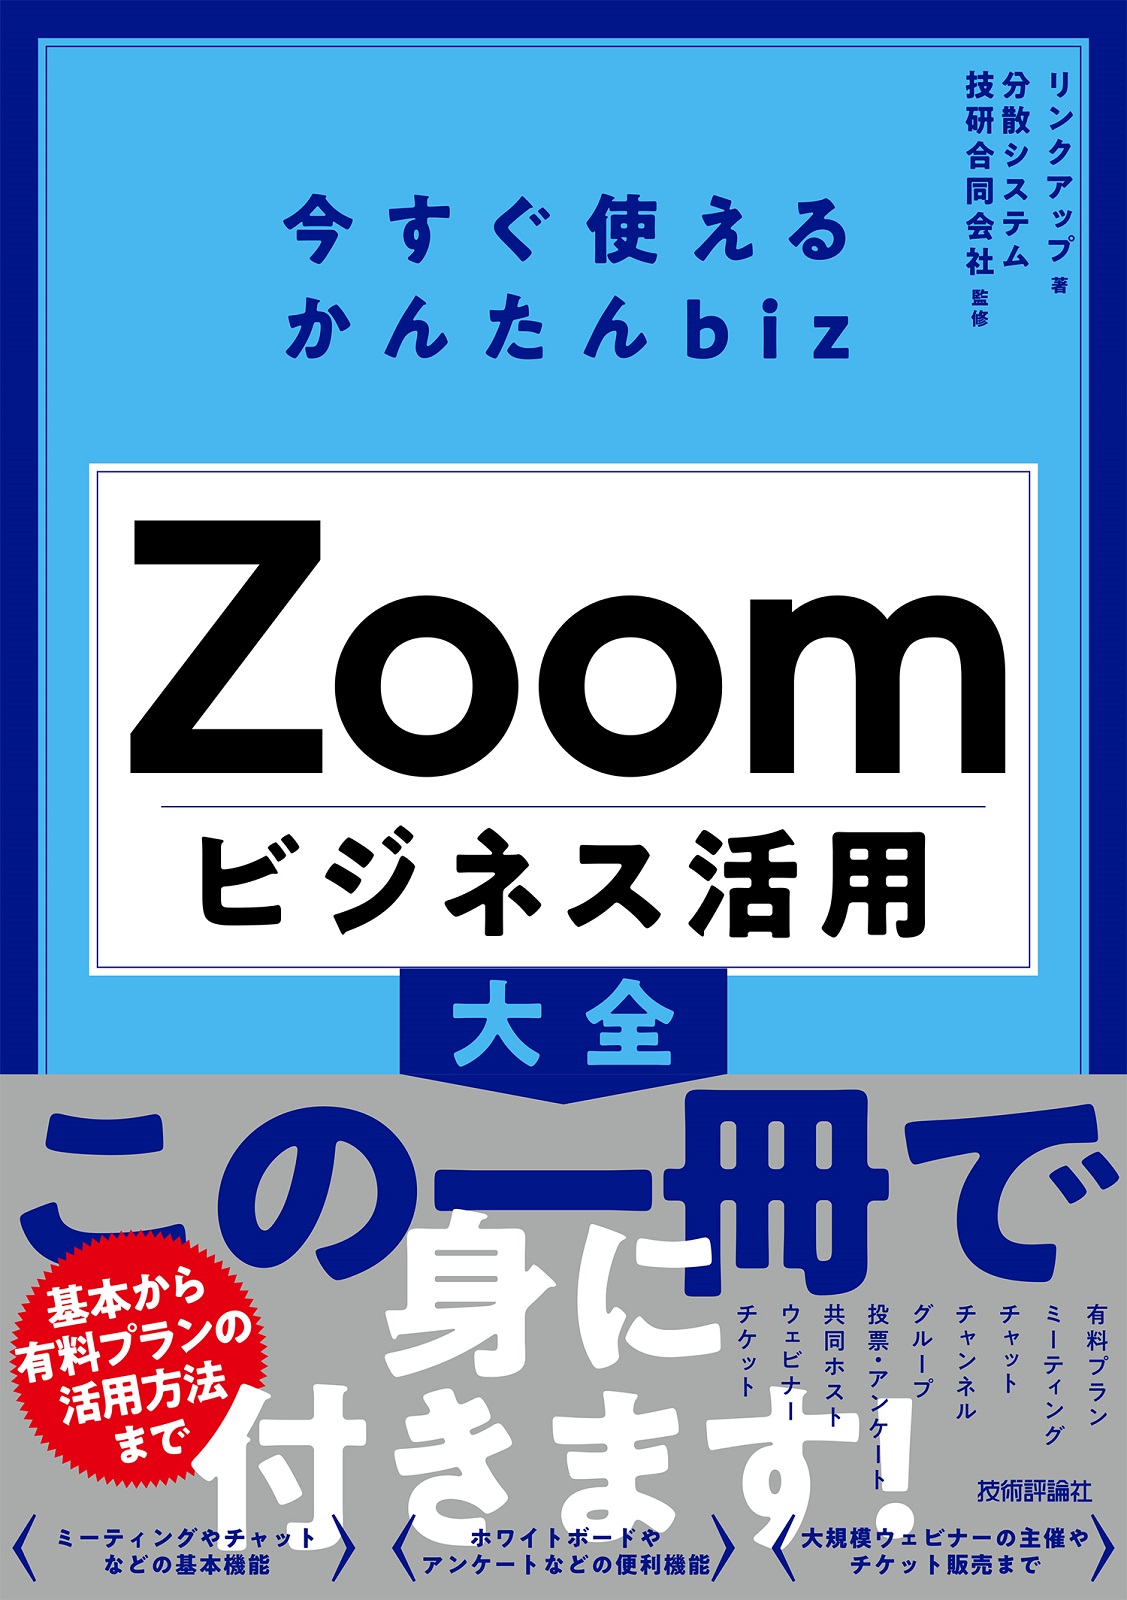 今すぐ使えるかんたんbiz Zoom ビジネス活用大全